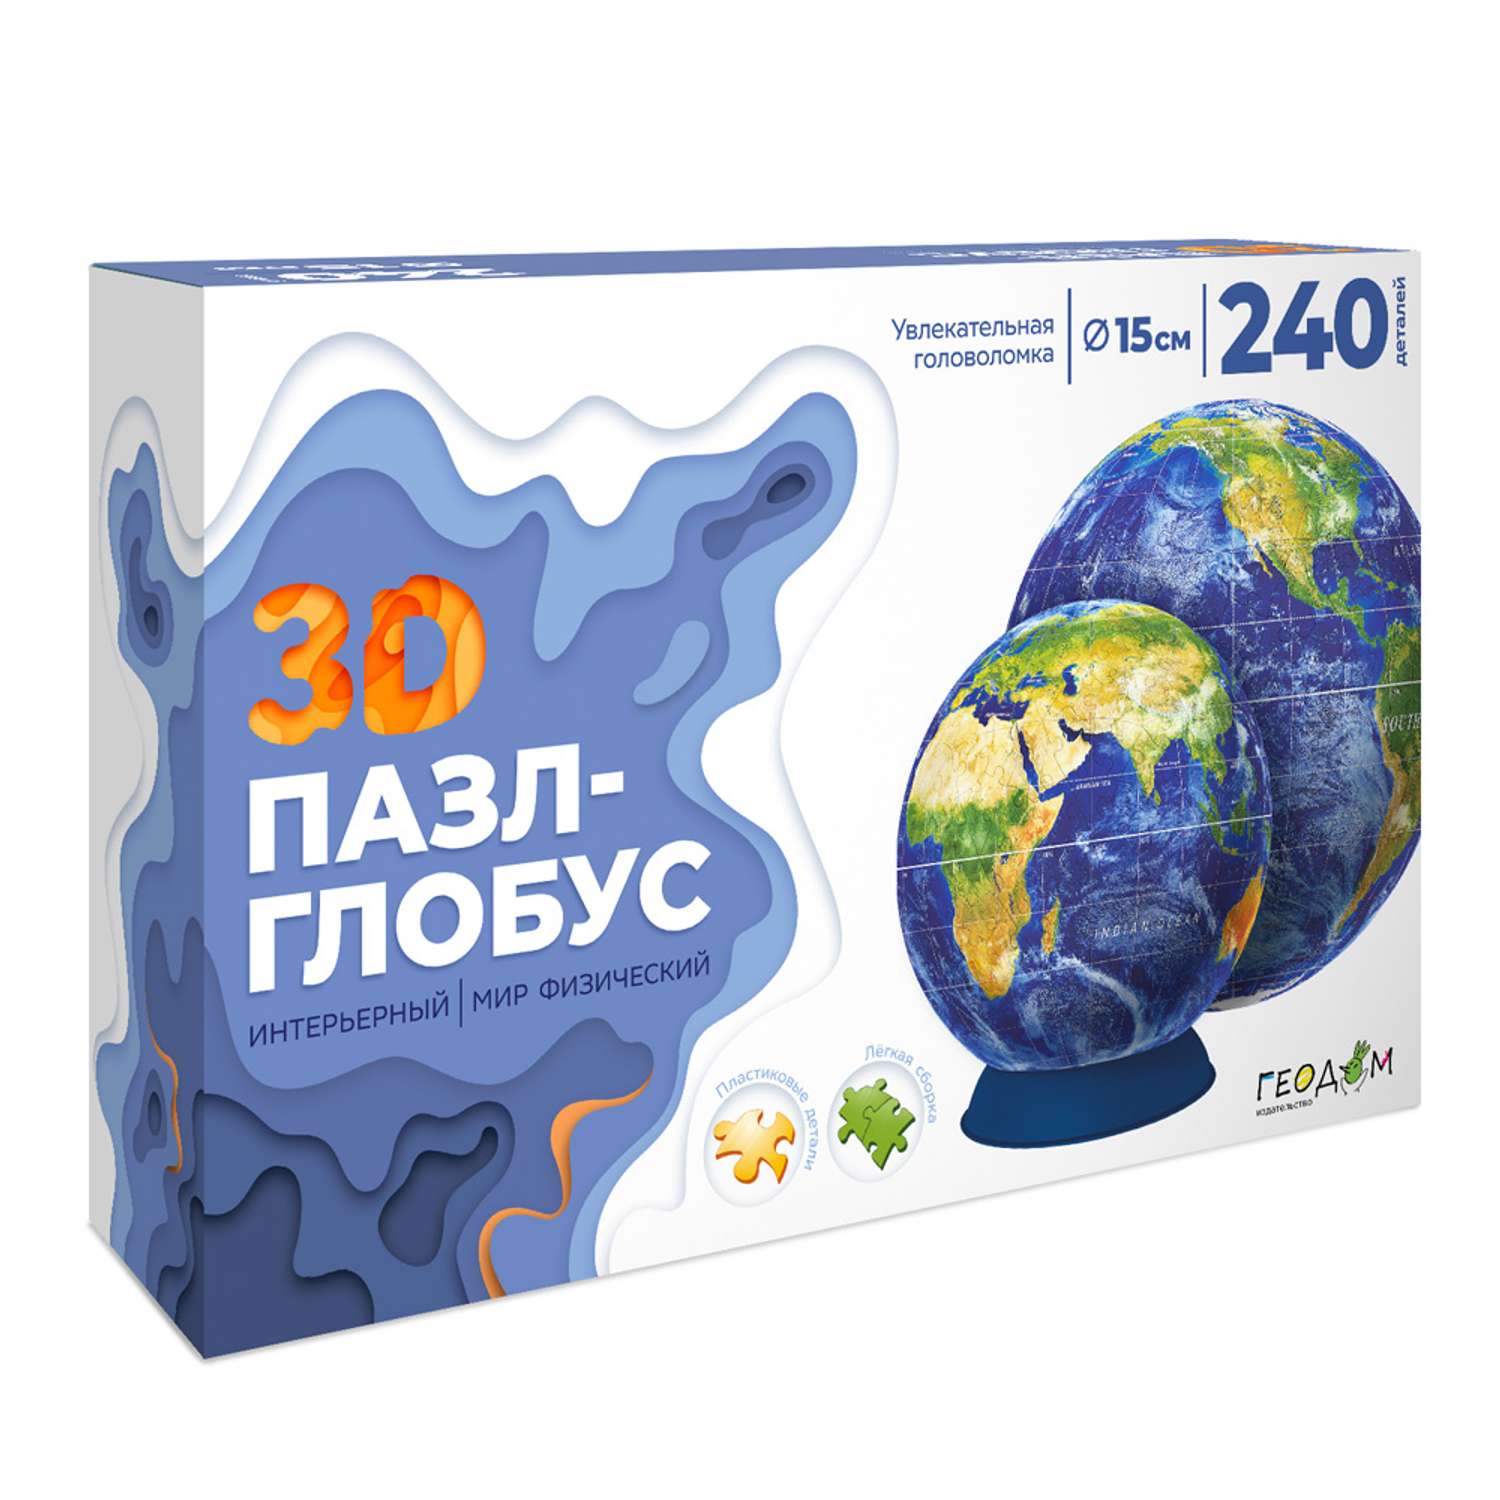 3D пазл-глобус ГЕОДОМ Мир физический. Интерьерный полупрозрачный. 240 деталей - фото 1